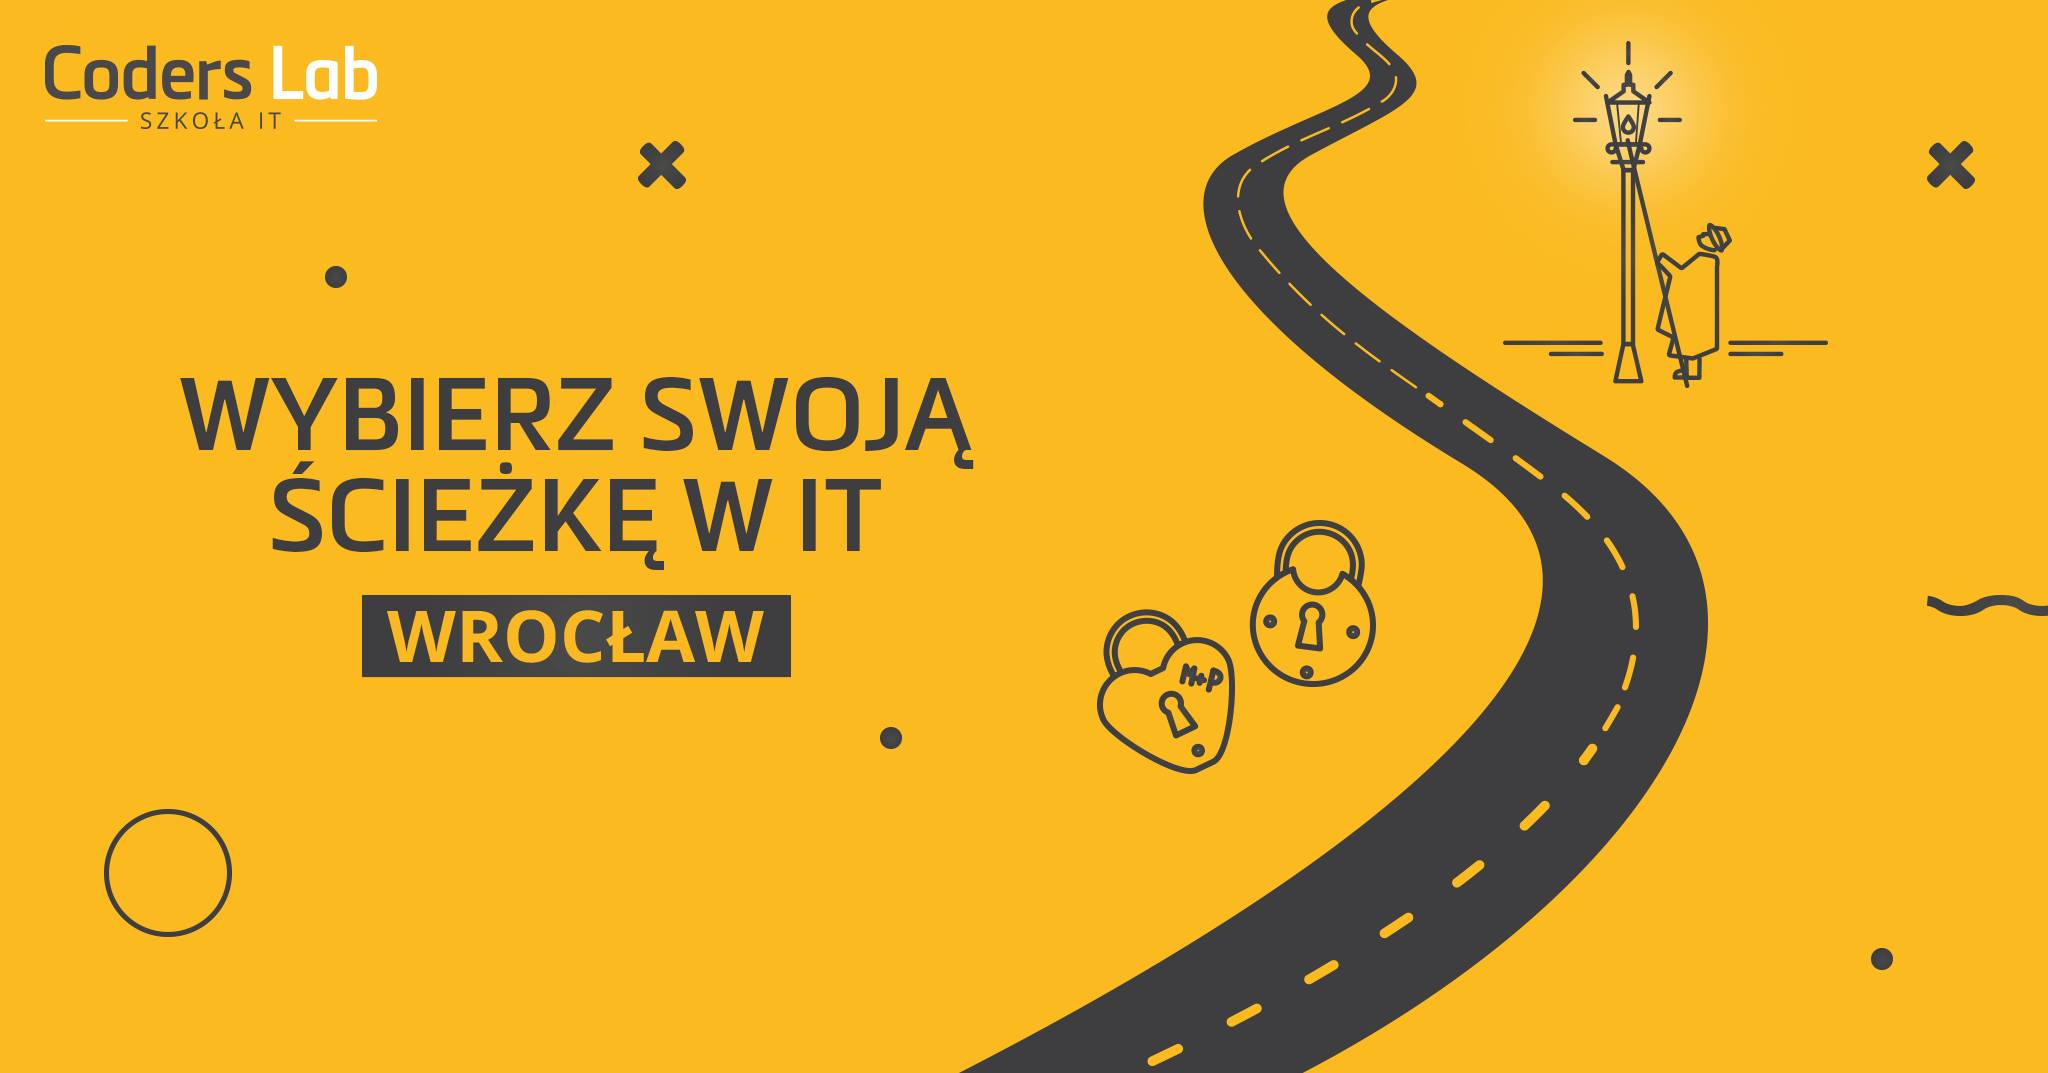 coders-lab-szkola-it-wybierz-swoja-sciezke-it-styczen-2019